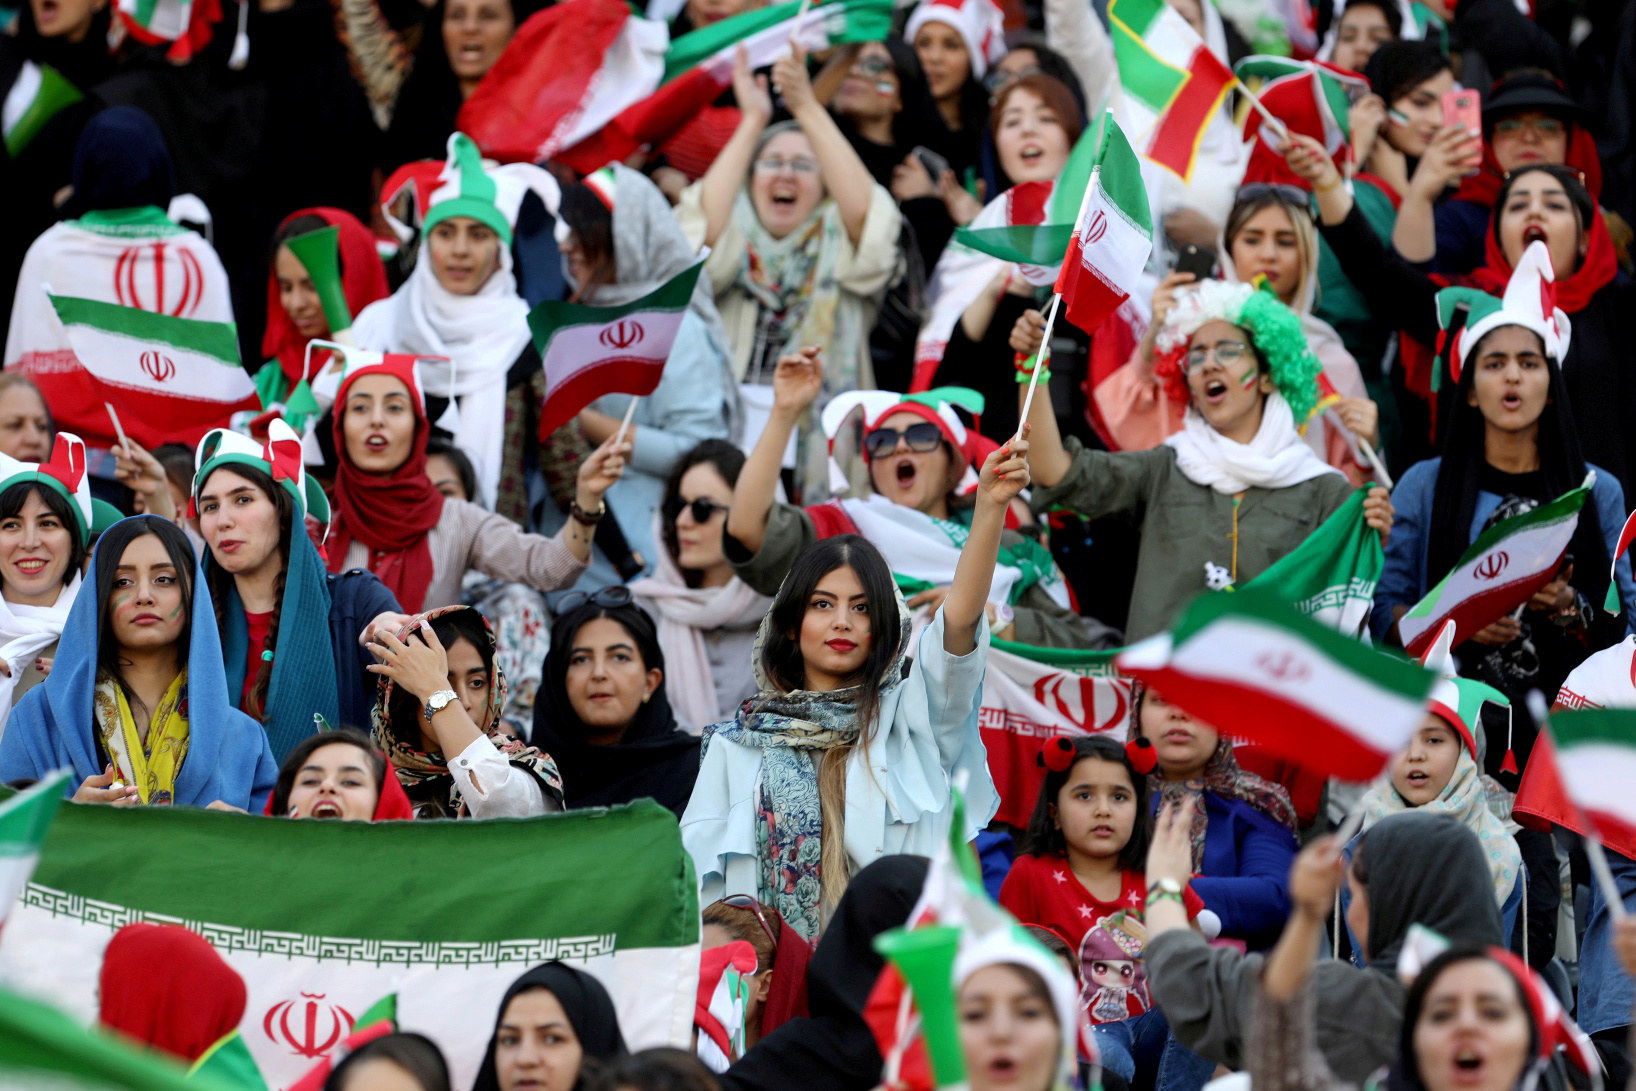 イラン人女性 およそ40年ぶりにサッカー観戦を認められる